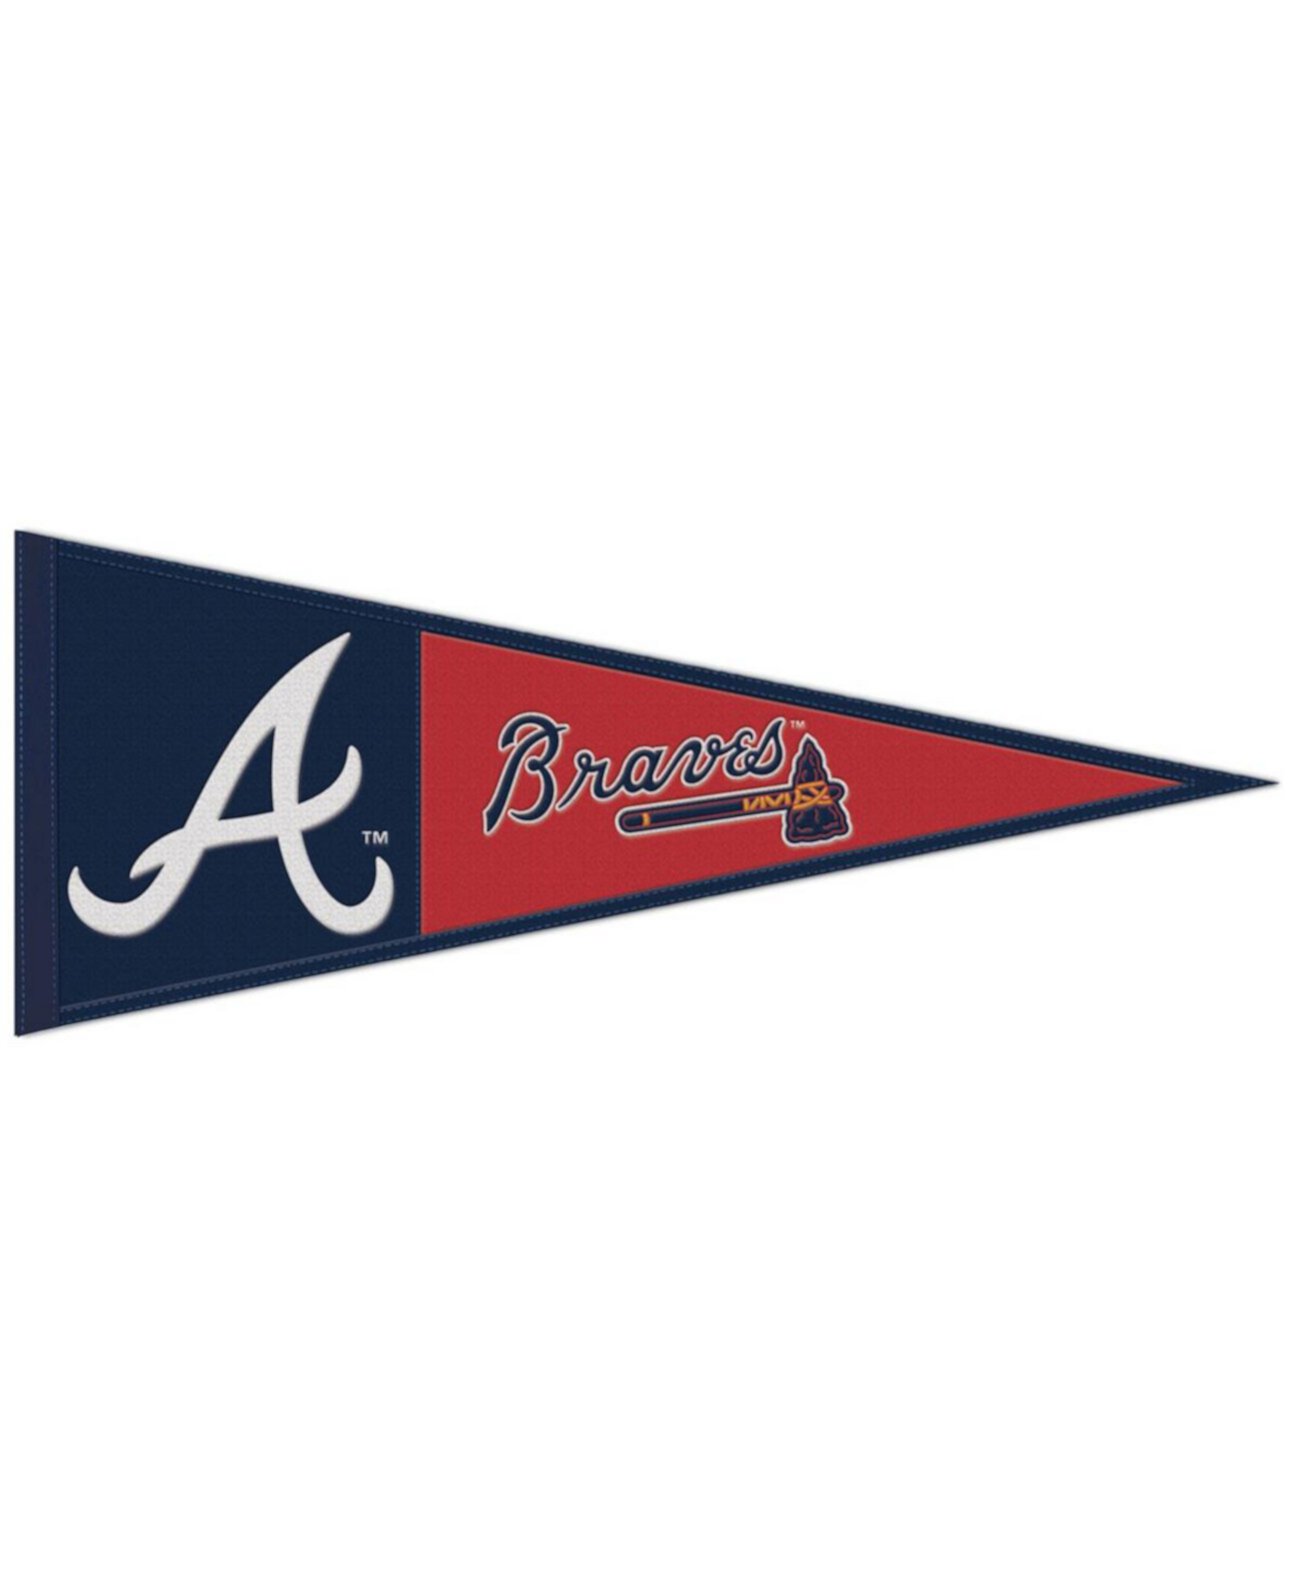 Шерстяной вымпел с основным логотипом Atlanta Braves размером 13 x 32 дюйма Wincraft